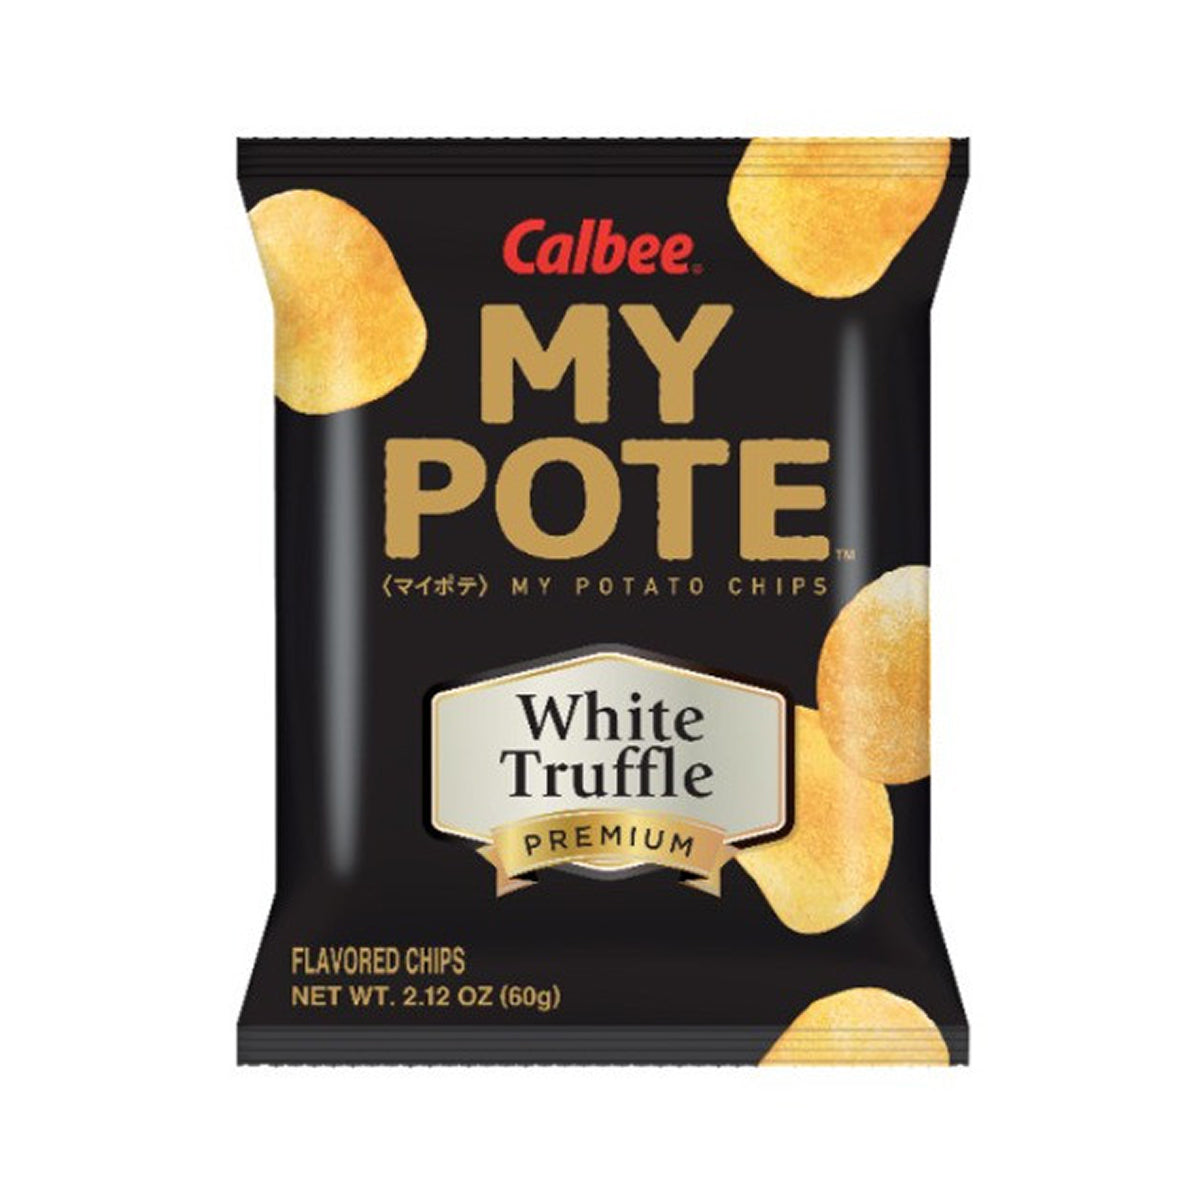 calbee my pote potato chips white truffle flavor - 2.12oz